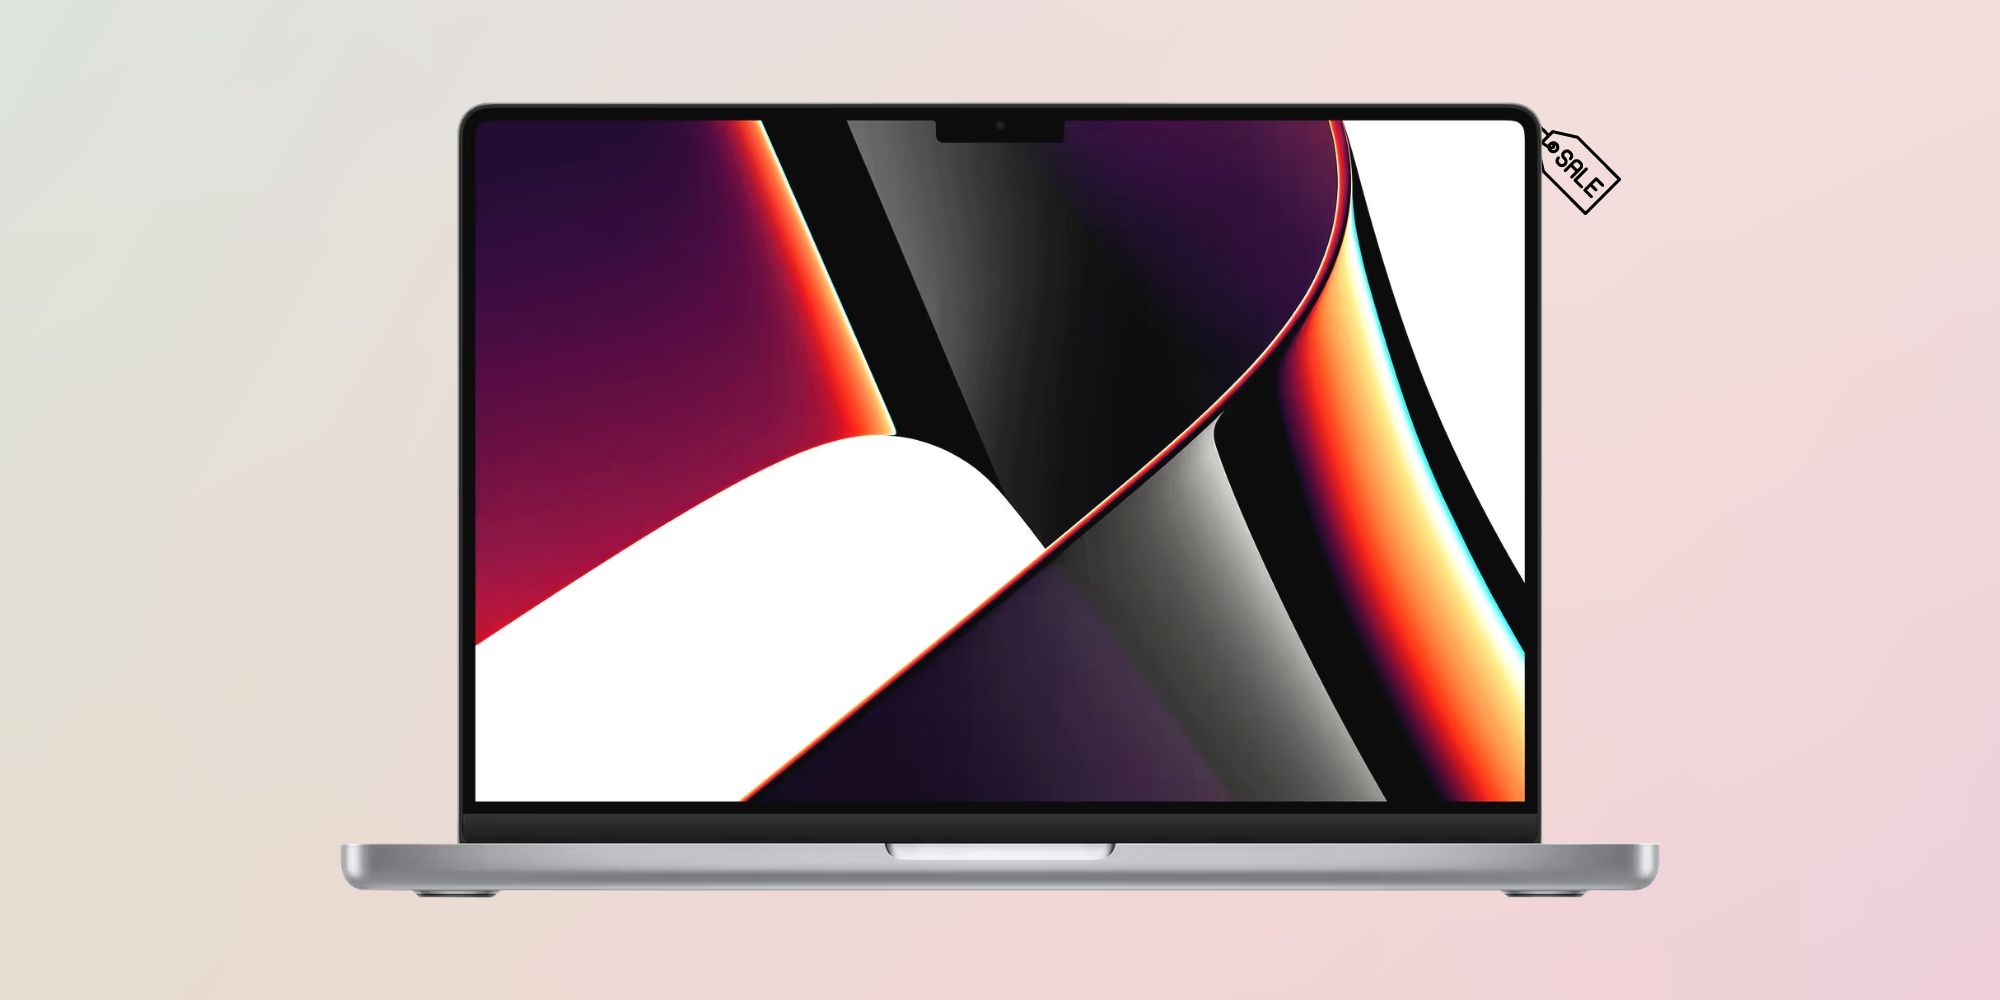 Obtenga la MacBook Pro M1 de Apple por hasta $ 700 de descuento hoy